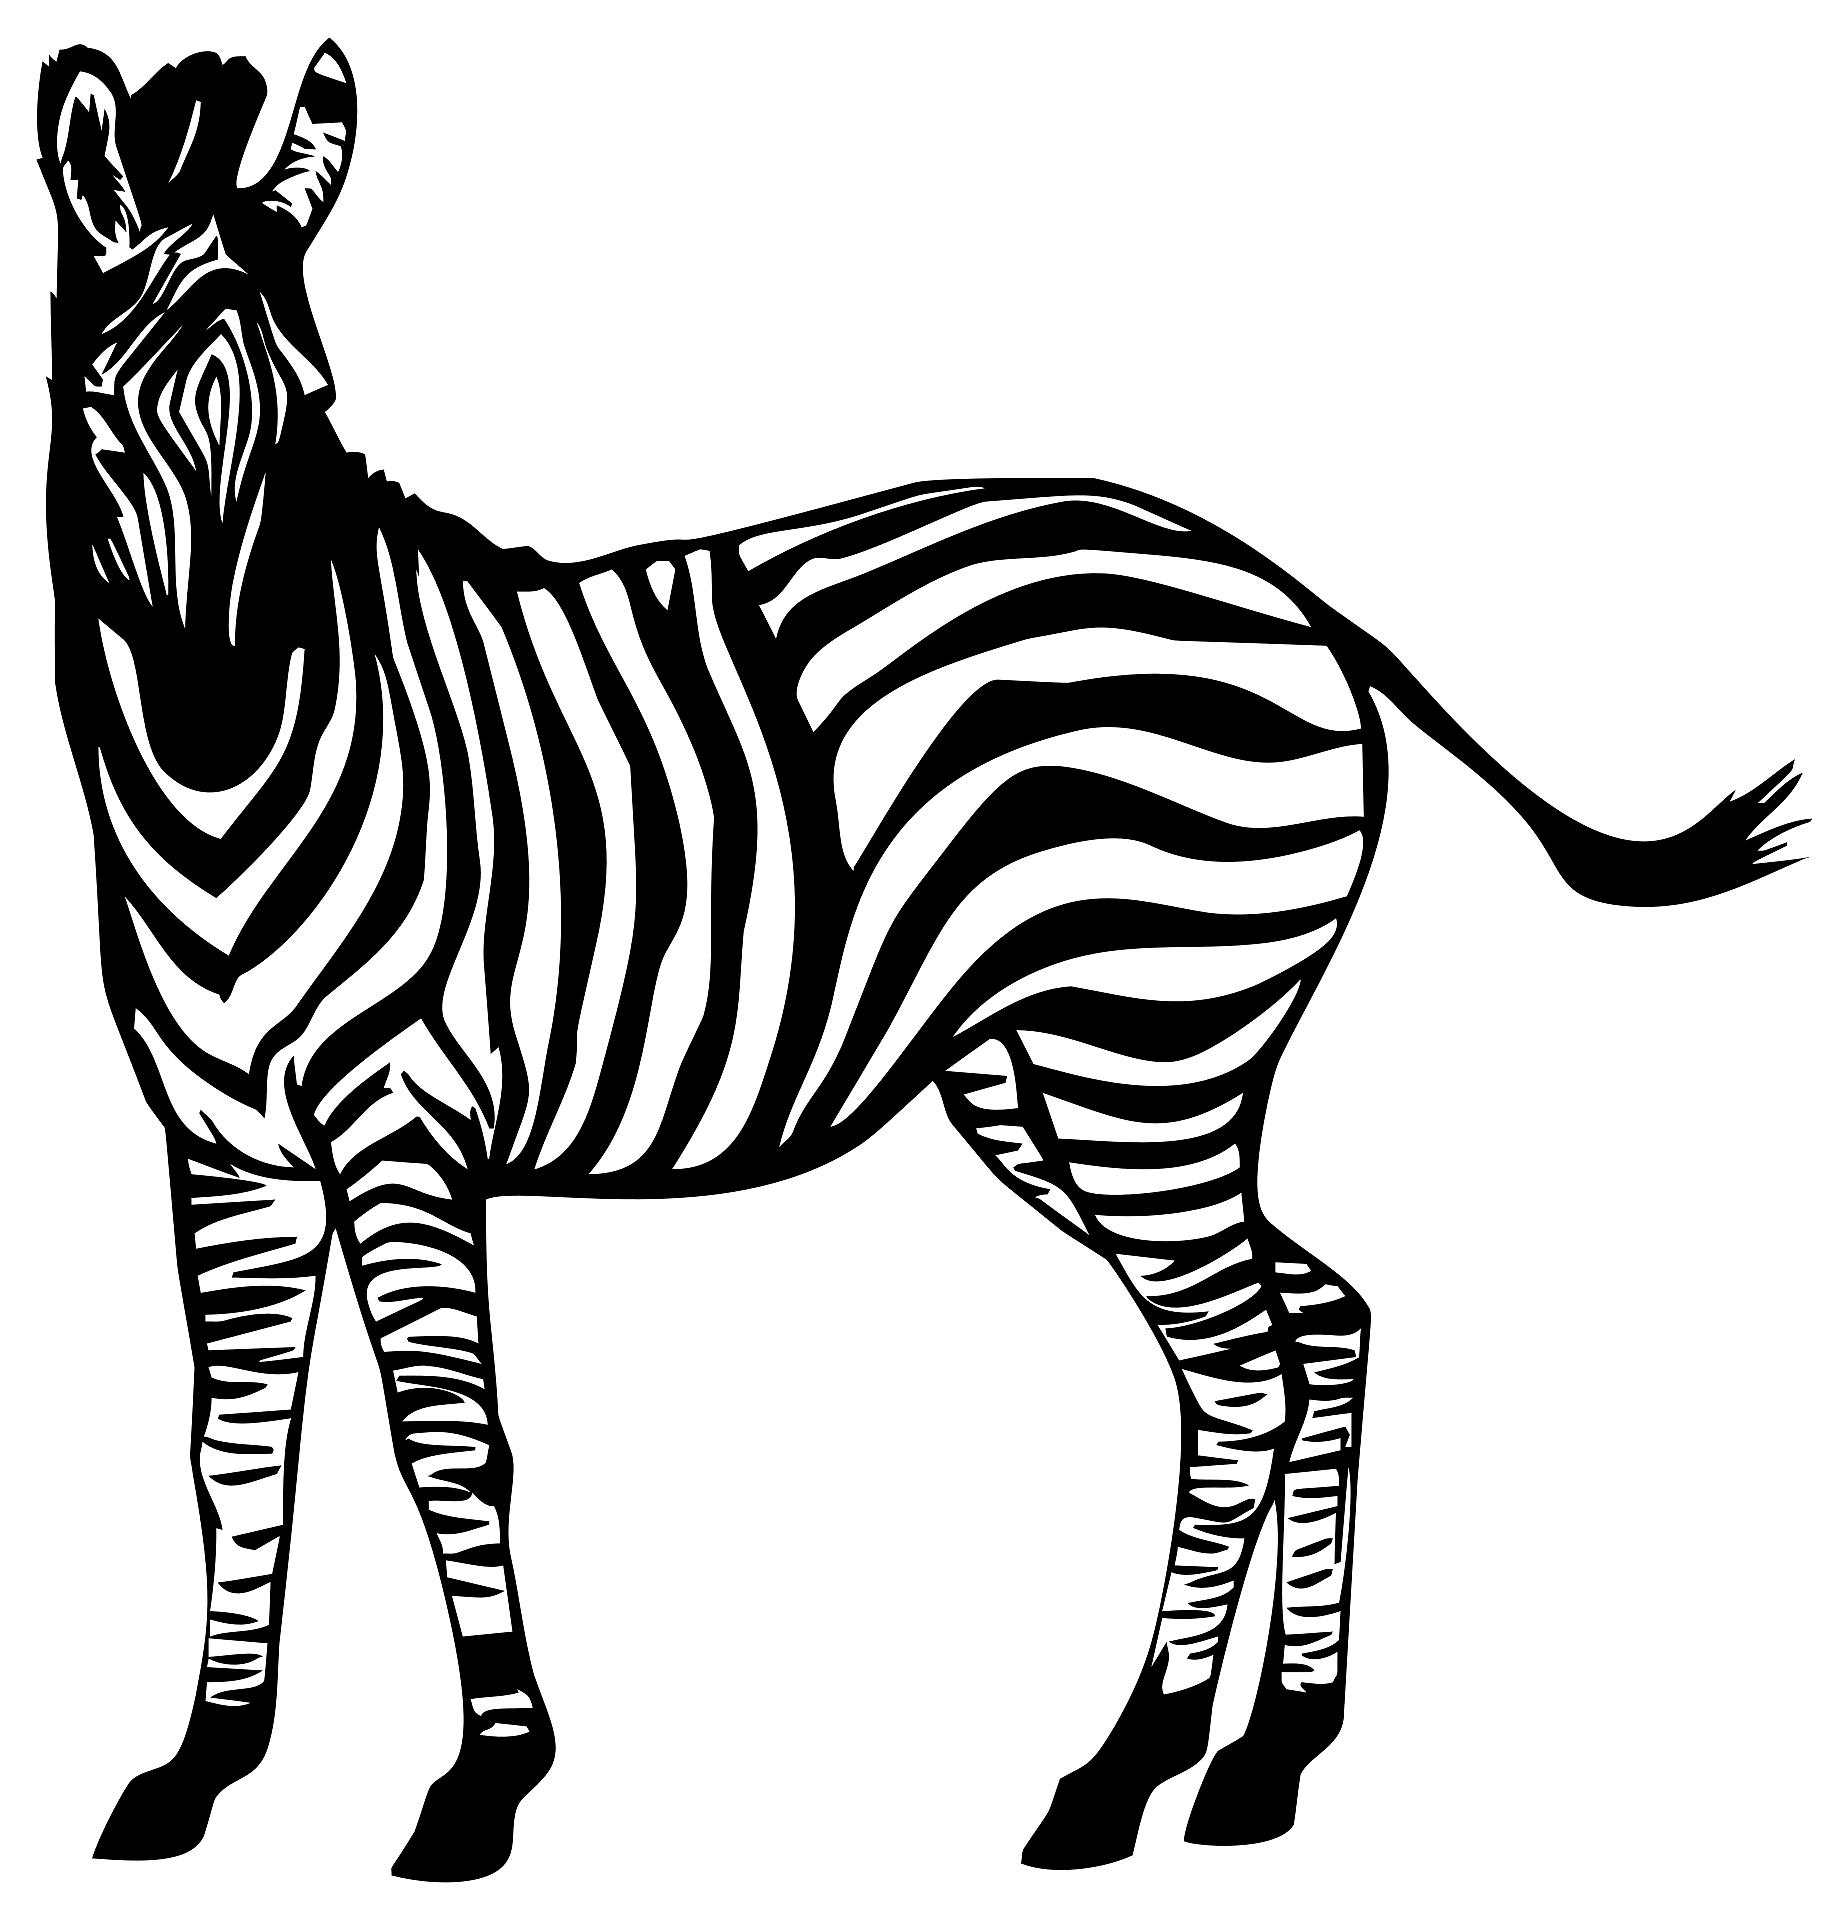 Disegno da colorare di una zebra